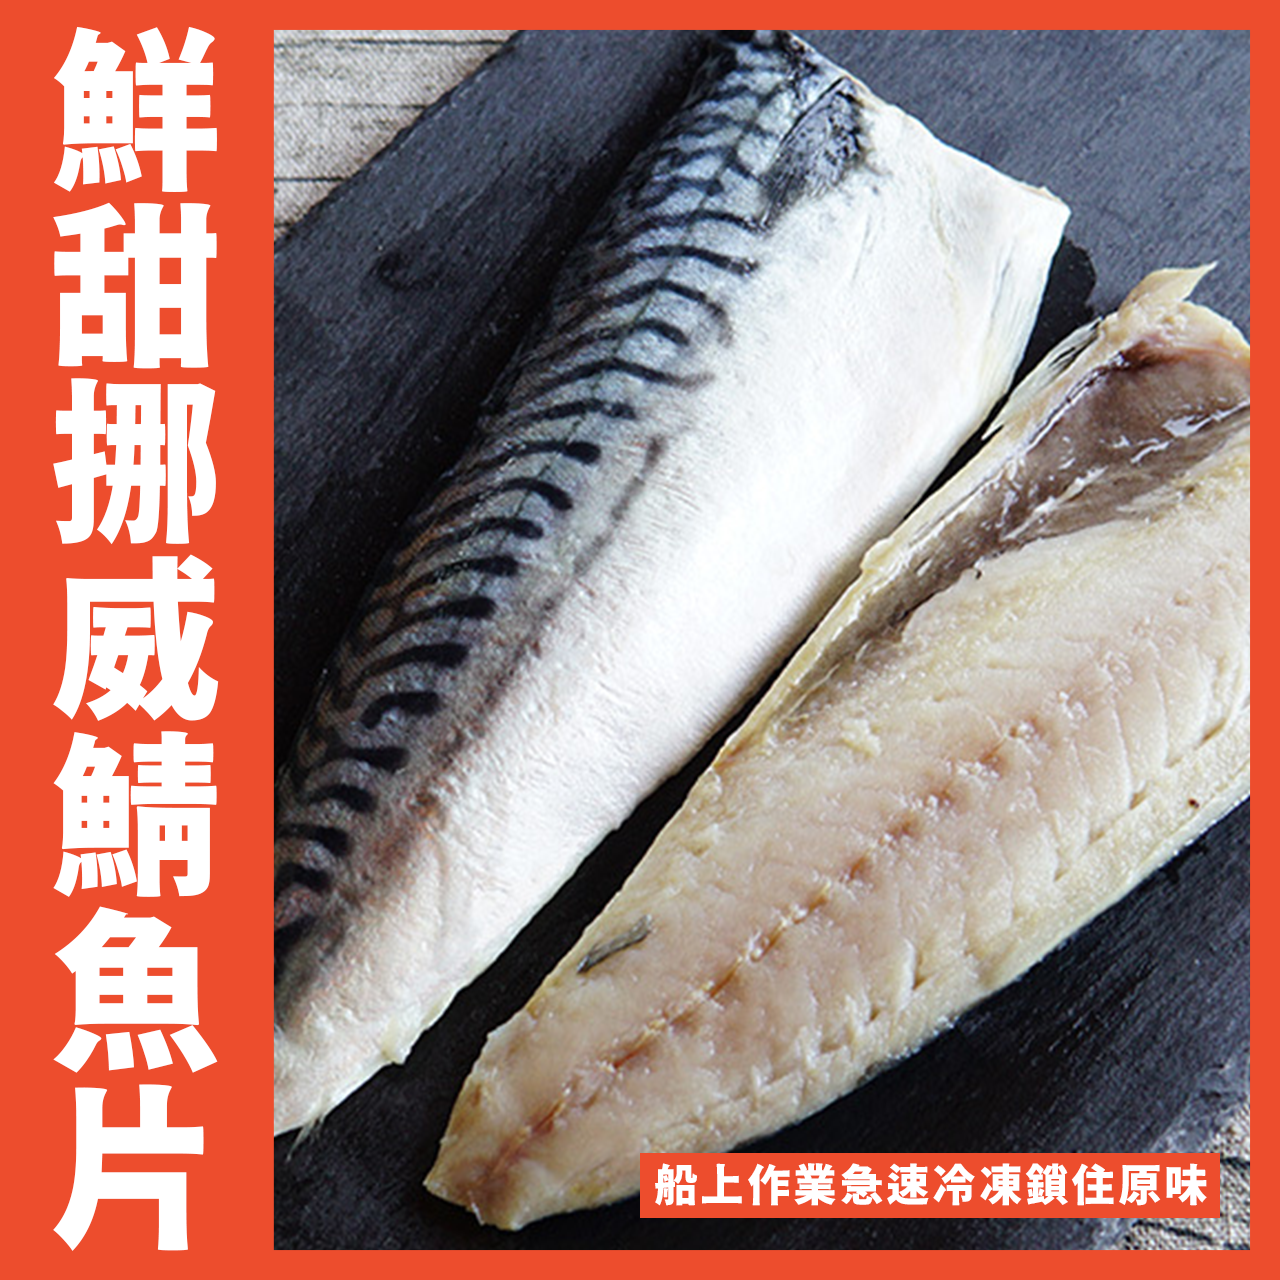 【天天來海鮮】挪威頂級紅字鯖魚每片100/120g